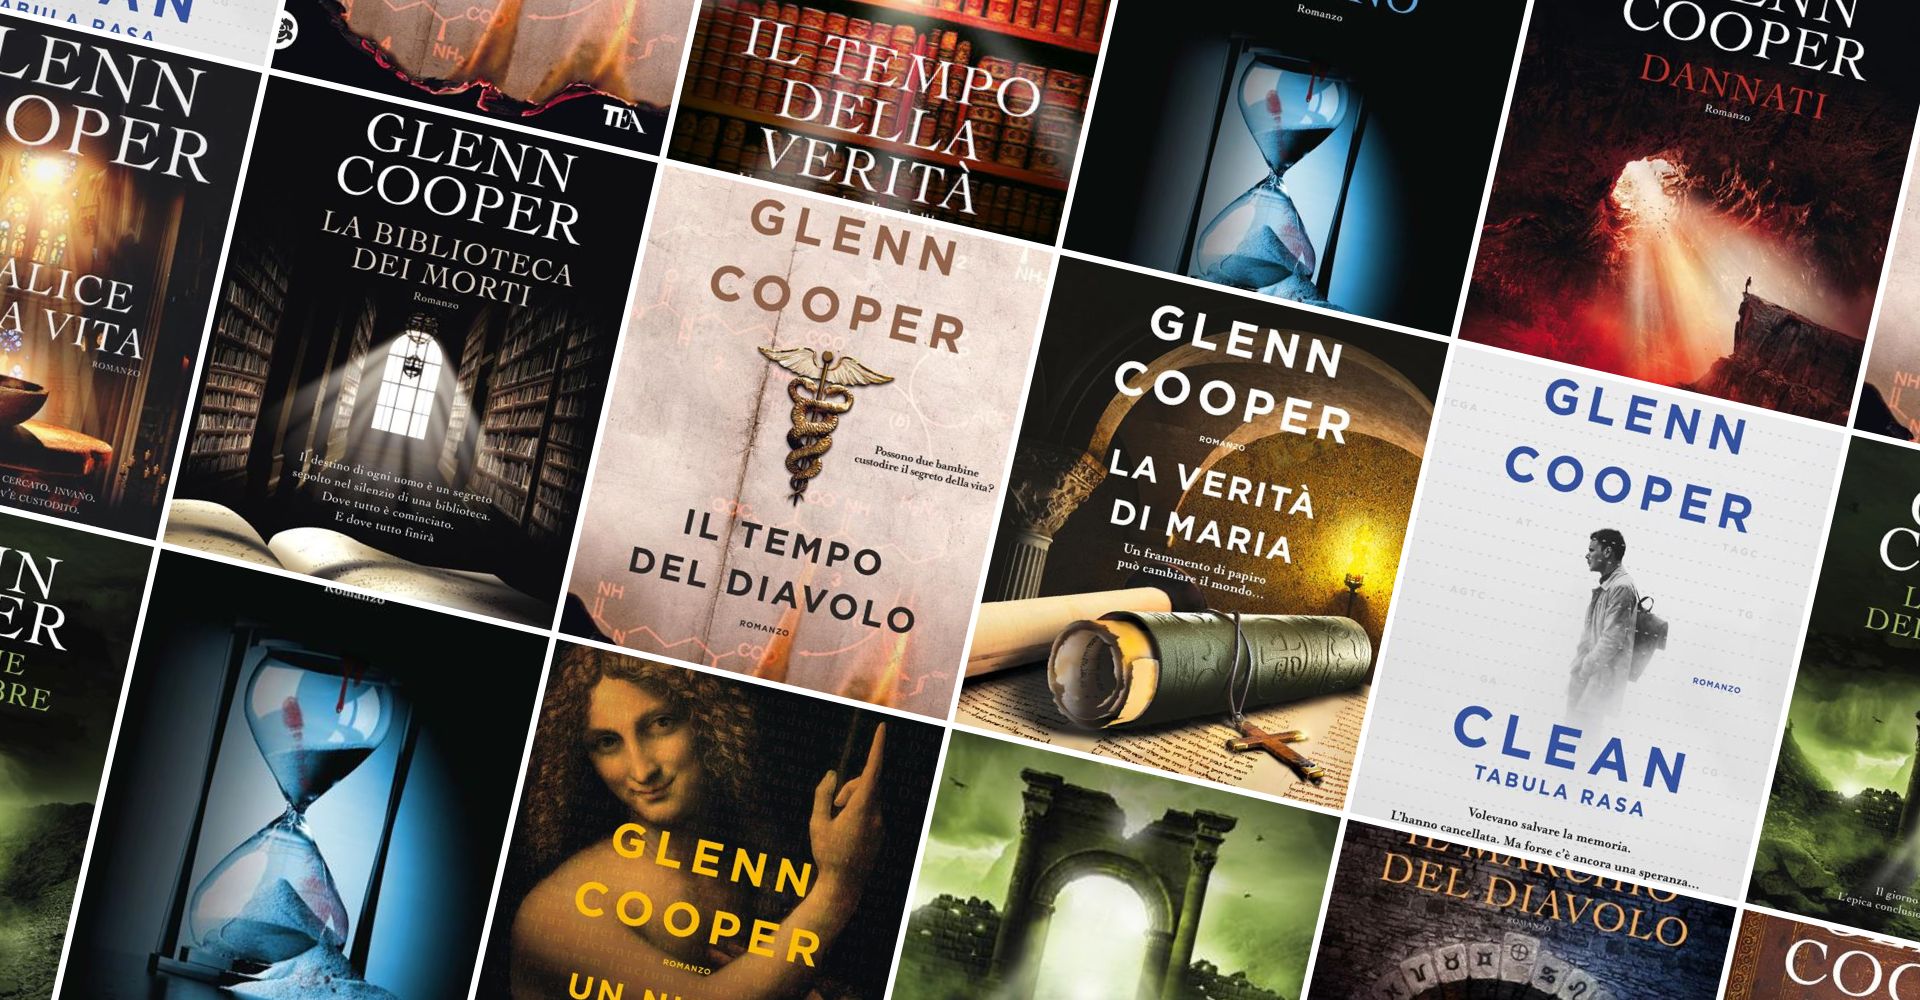 Storia, avventura e mistero: alla scoperta dei libri di Glenn Cooper